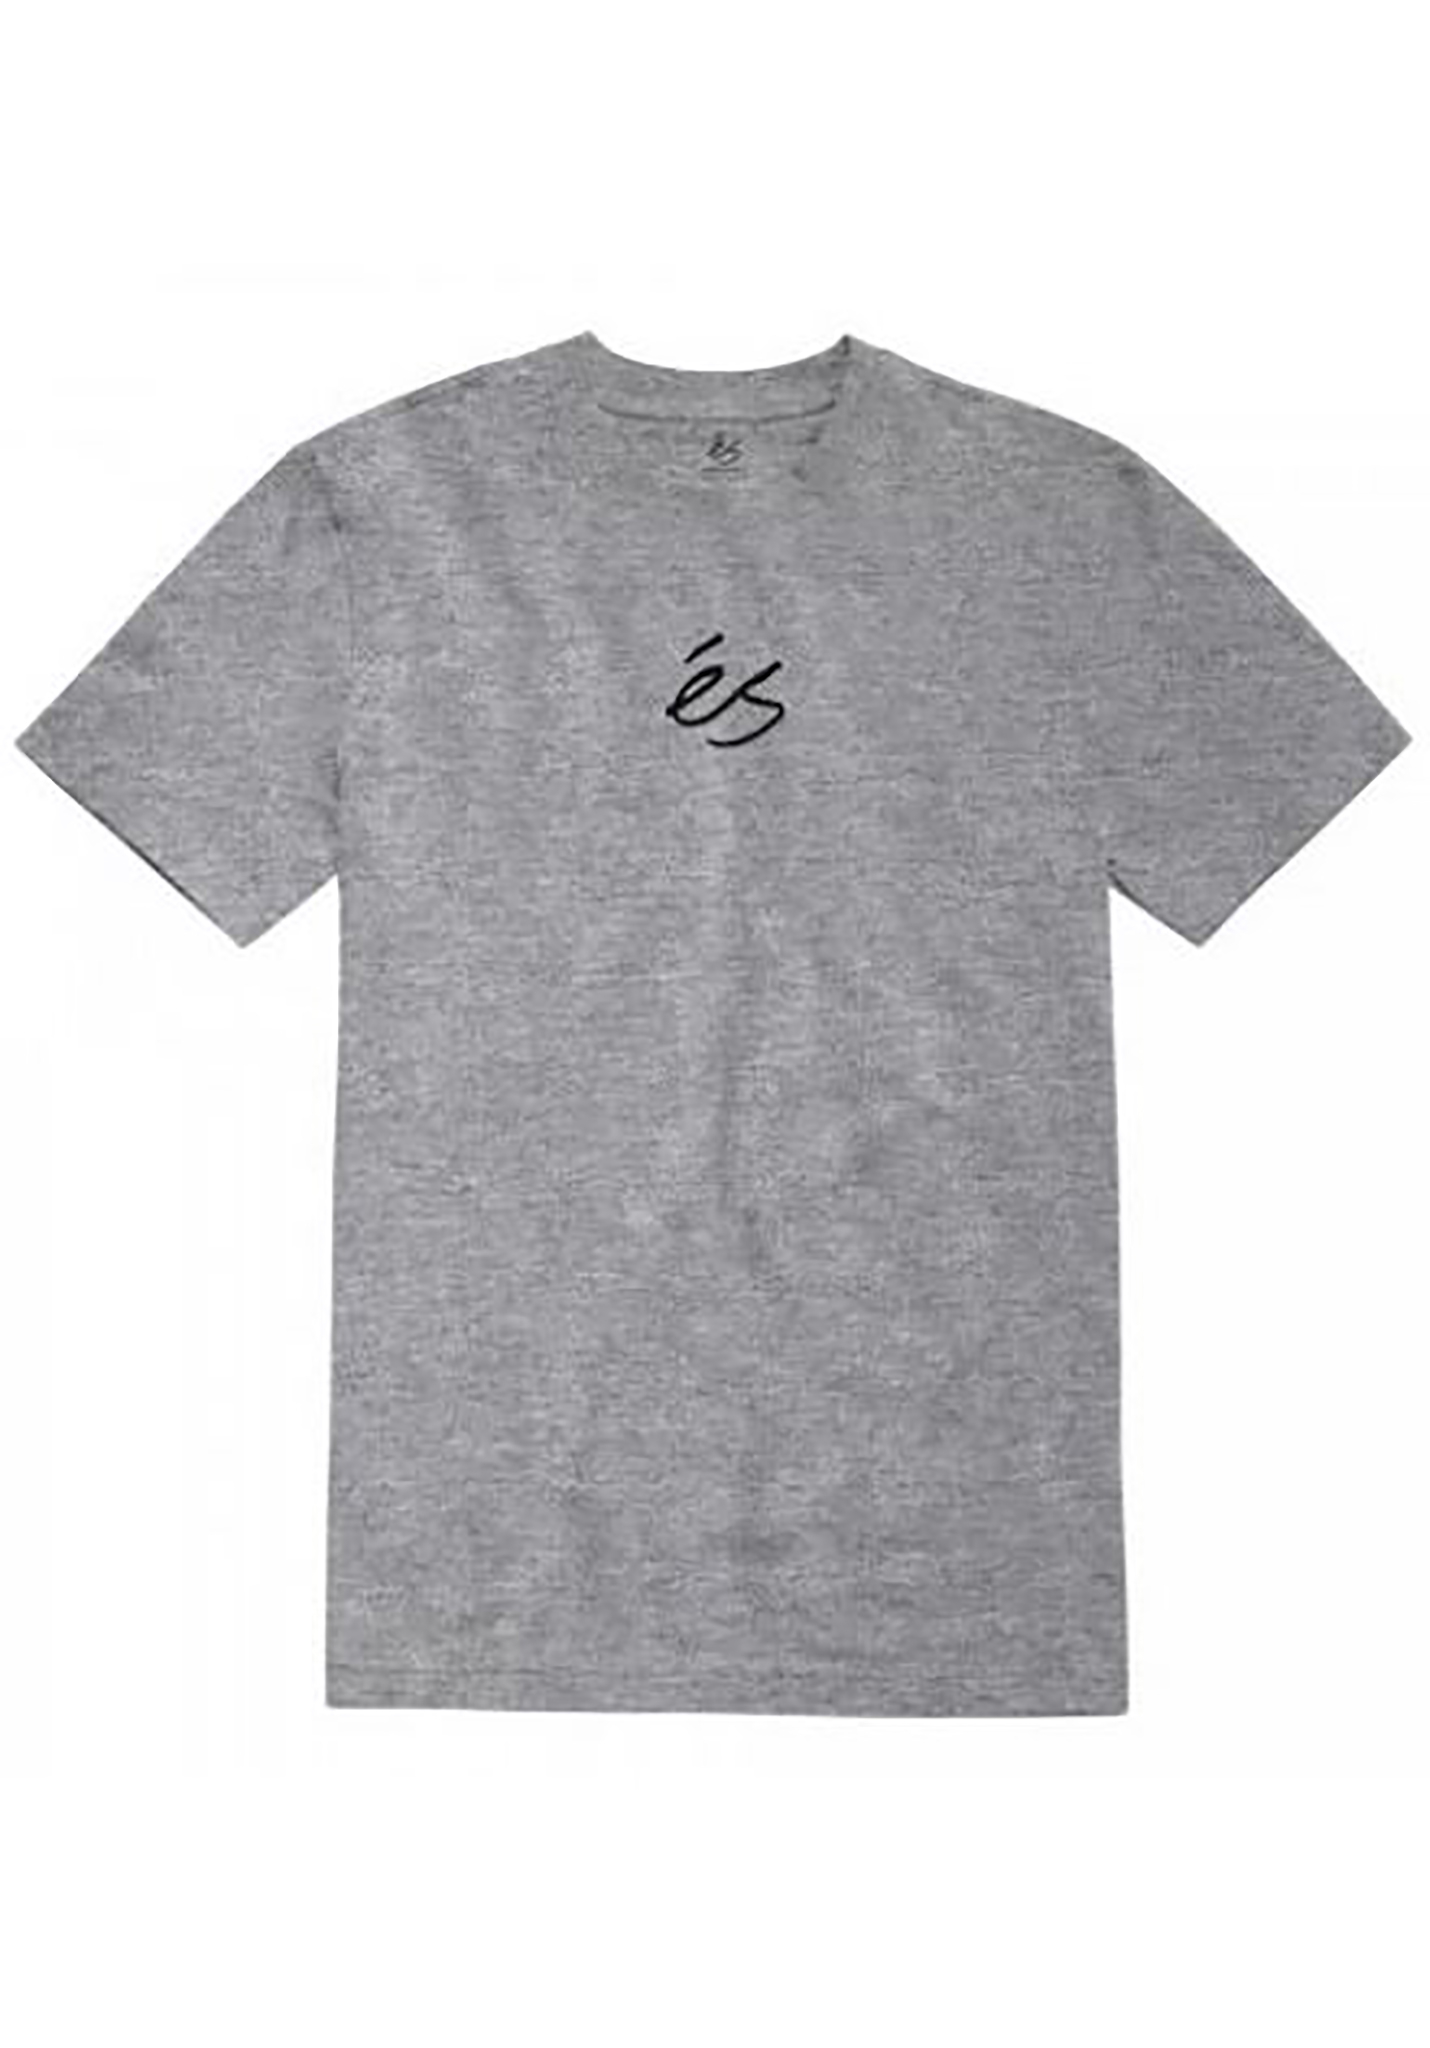 ES Mini Script T-Shirt grau/leder L